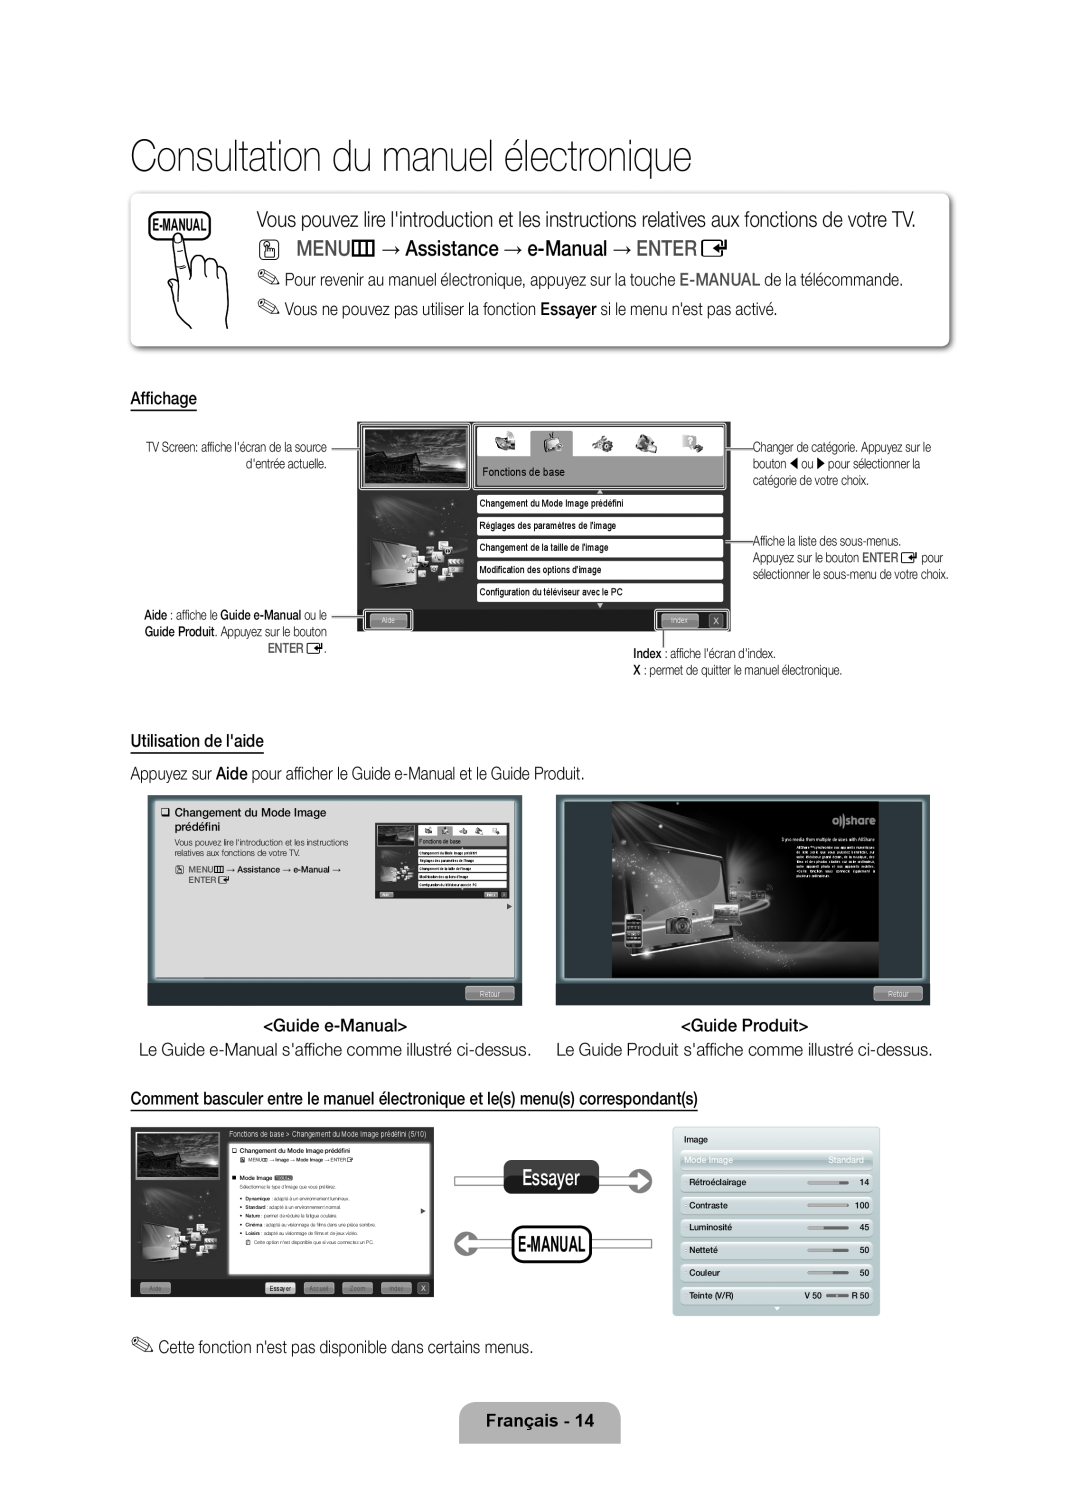 Samsung UE55D6500VSXTK Consultation du manuel électronique, O MENU m → Assistance → e-Manual → ENTER E, Essayer, E-Manual 